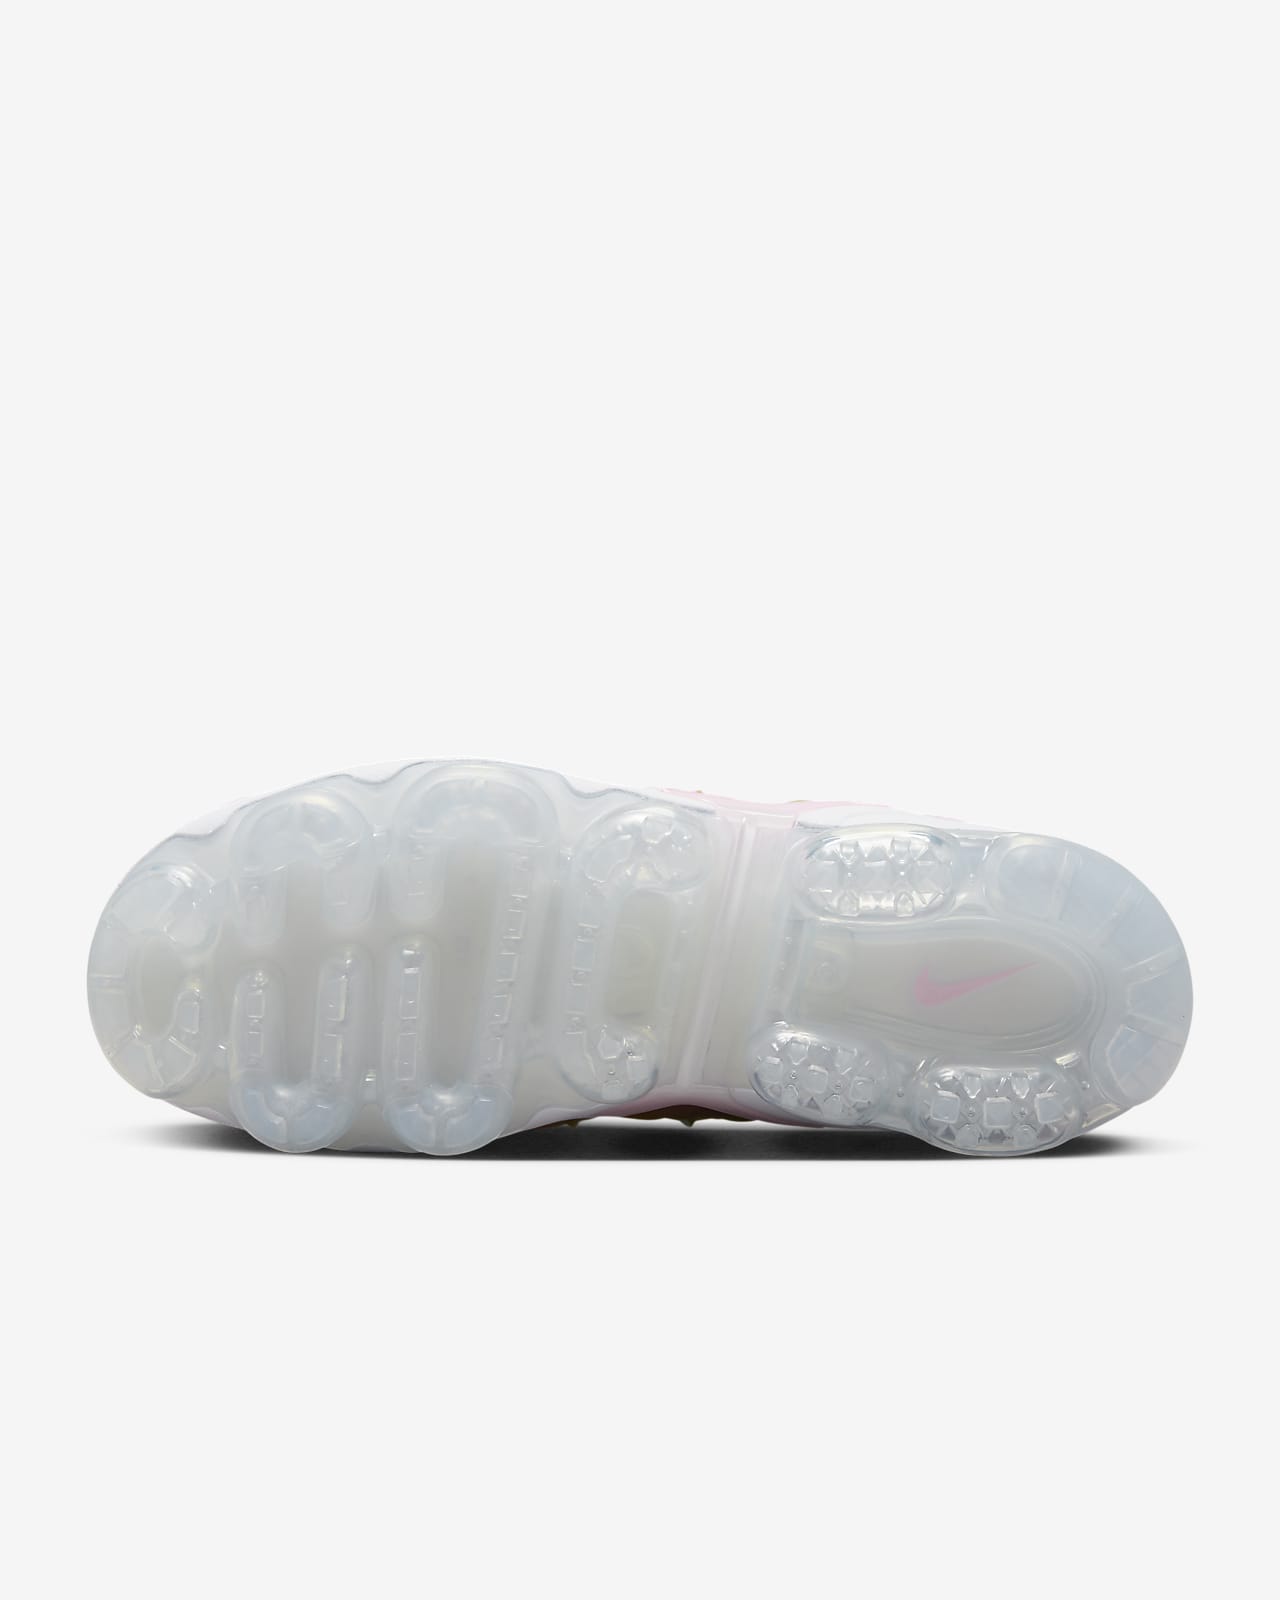 Nike Vapormax Plus Cotton Candy FJ4550-606